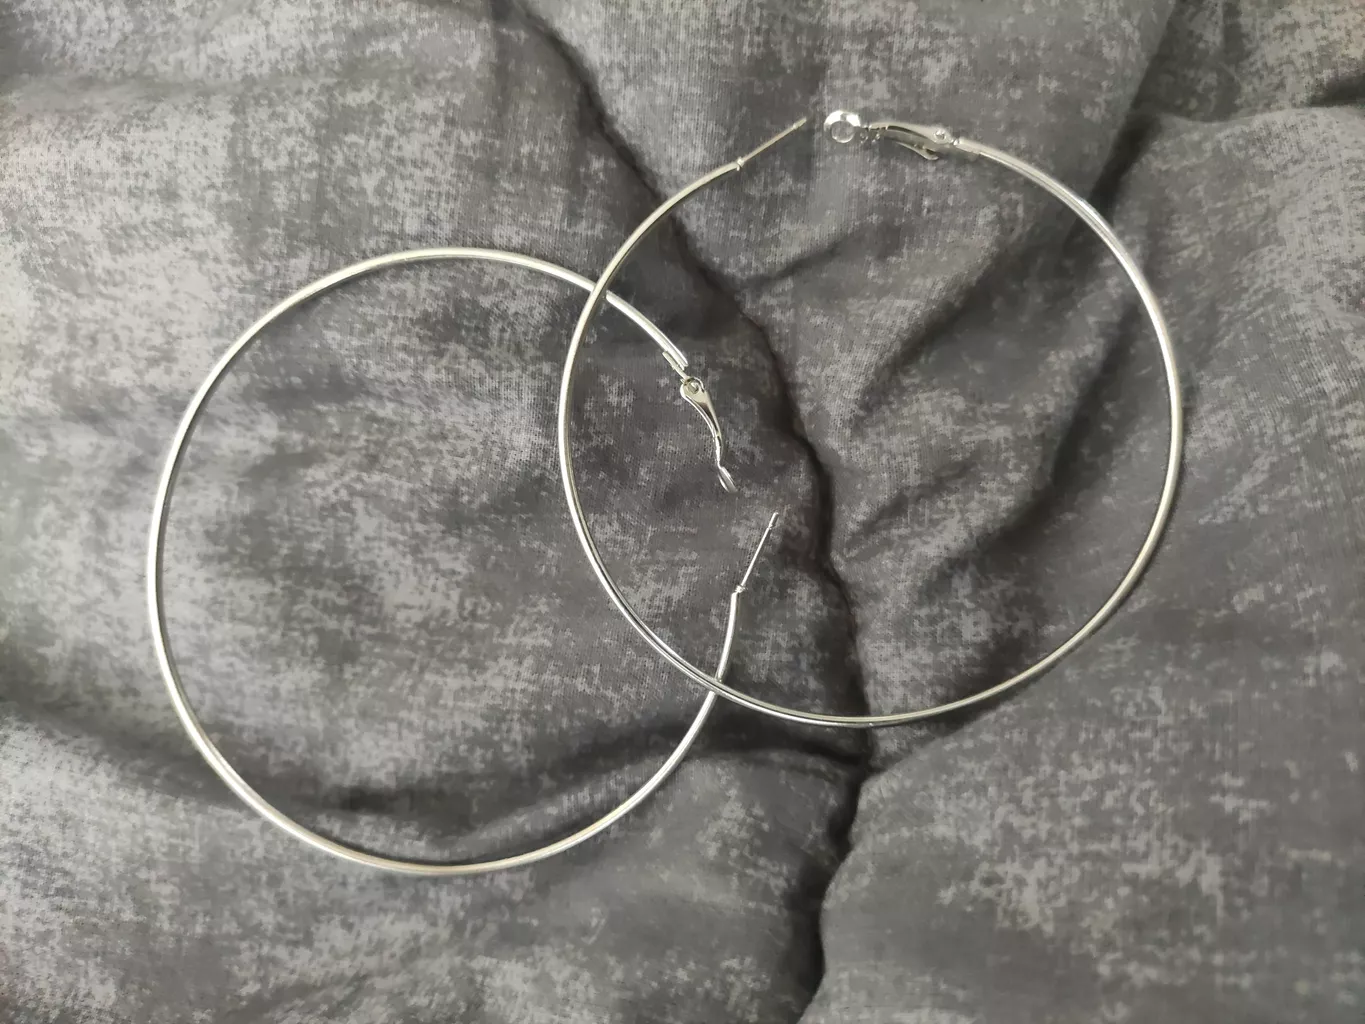 گوشواره حلقه ای استیل مارنا گالری مدل Silver